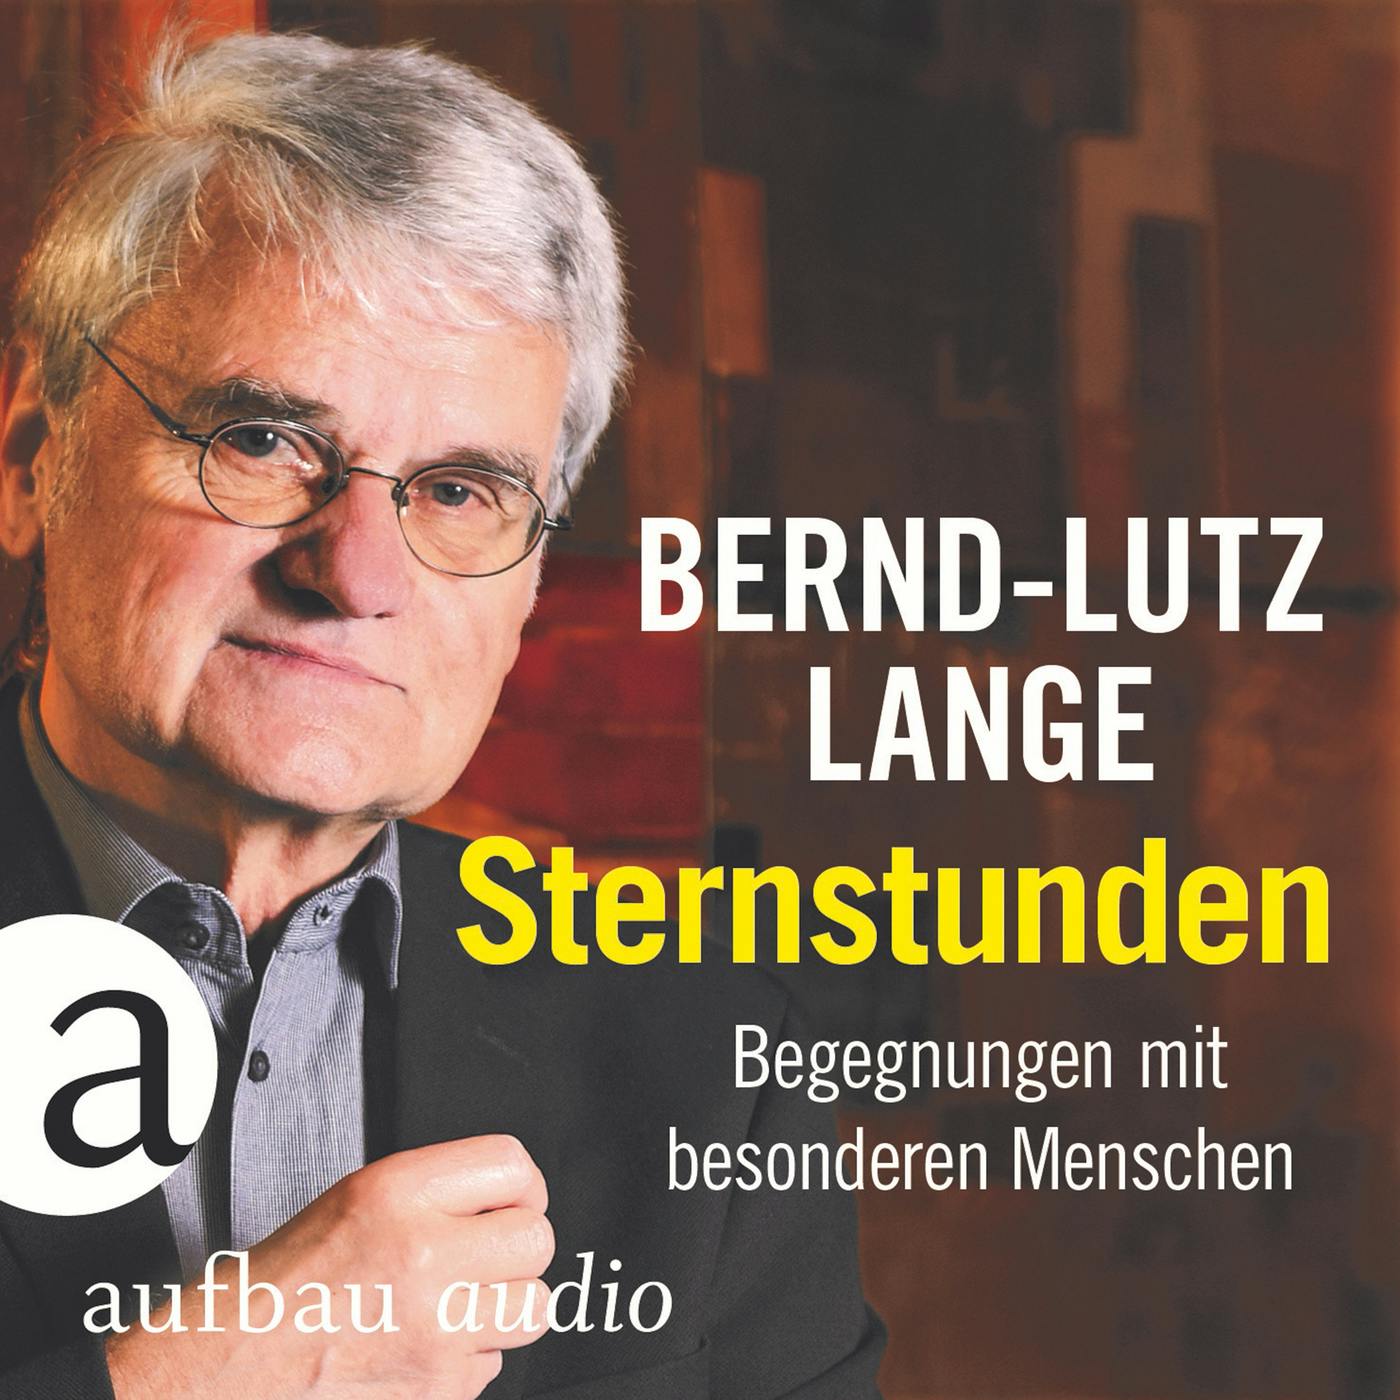 Sternstunden - Begegnungen mit besonderen Menschen (Live) - Bernd-Lutz Lange